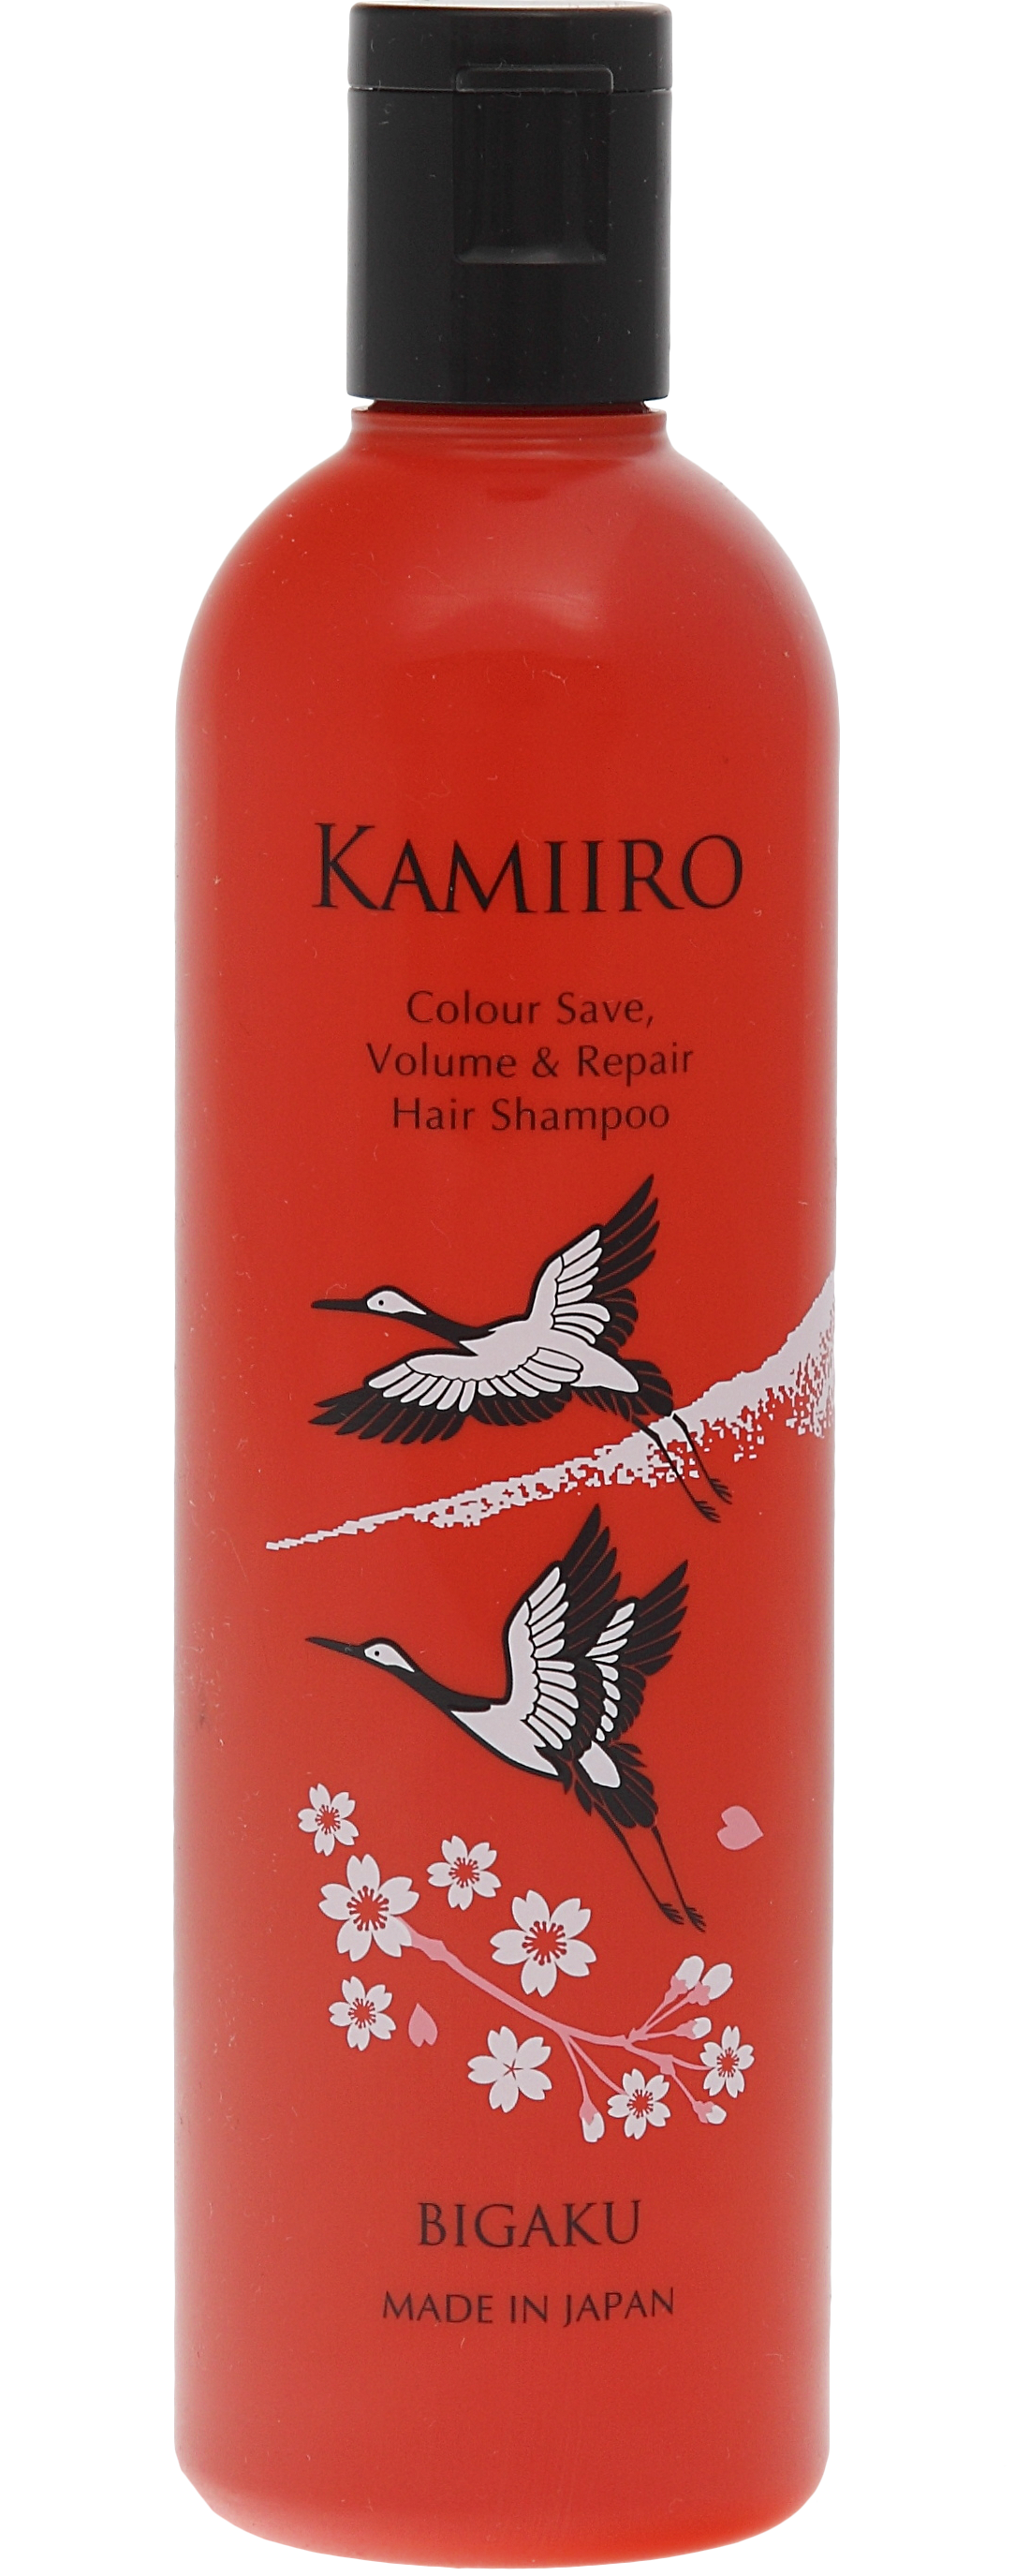 Kamiiro Colour Save Volume&Repair шампунь для объема и поддержания цвета волос, 330мл